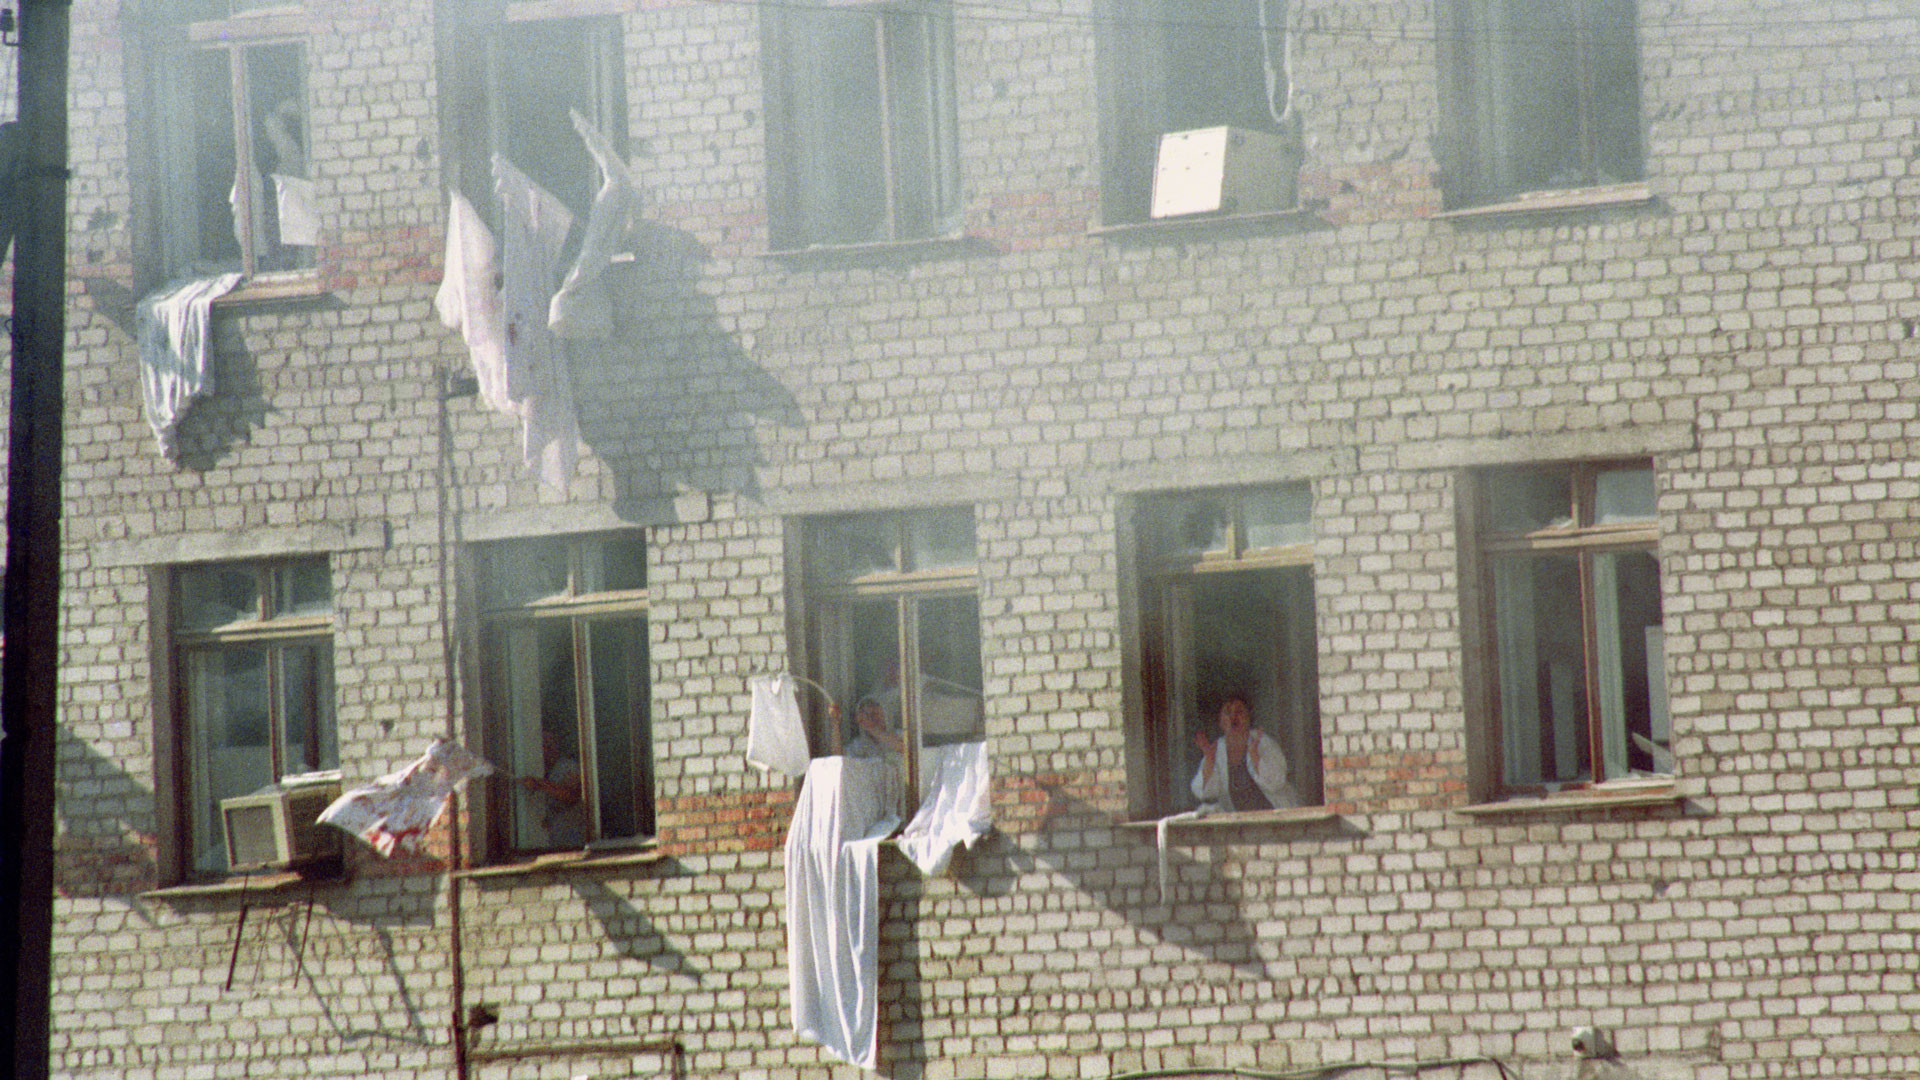 14 июня 1995. Захват заложников в Буденновске 1995. Террористический акт в будённовске (14—19 июня 1995). Буденновск 14 июня 1995 года. Штурм больницы в Буденновске 1995.